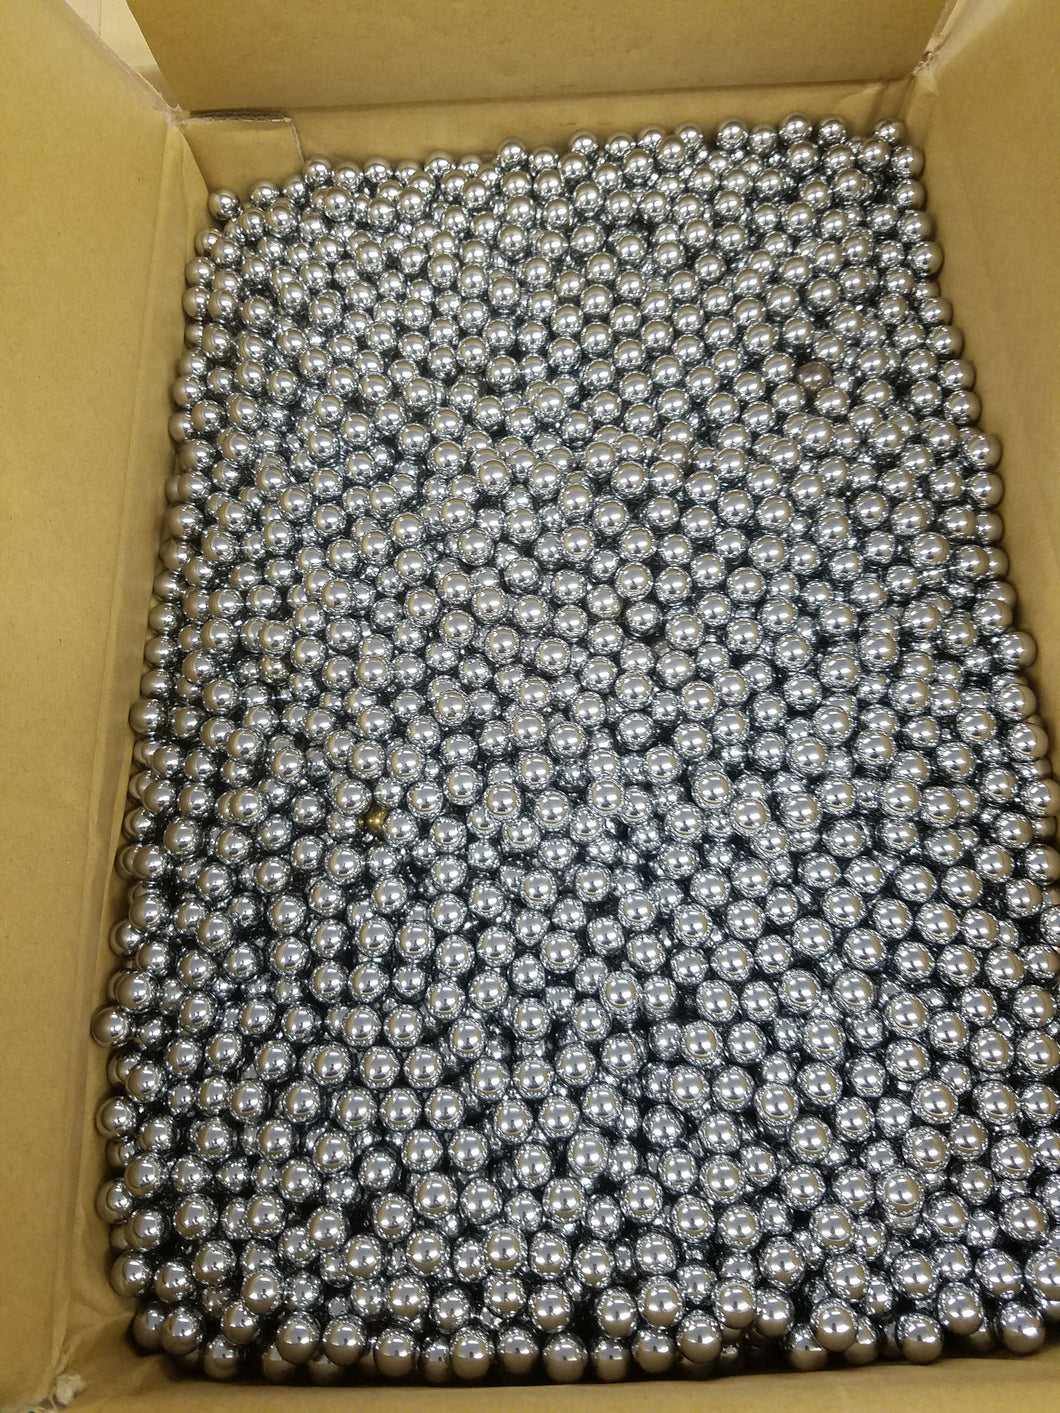 2000 Pachinko Balls